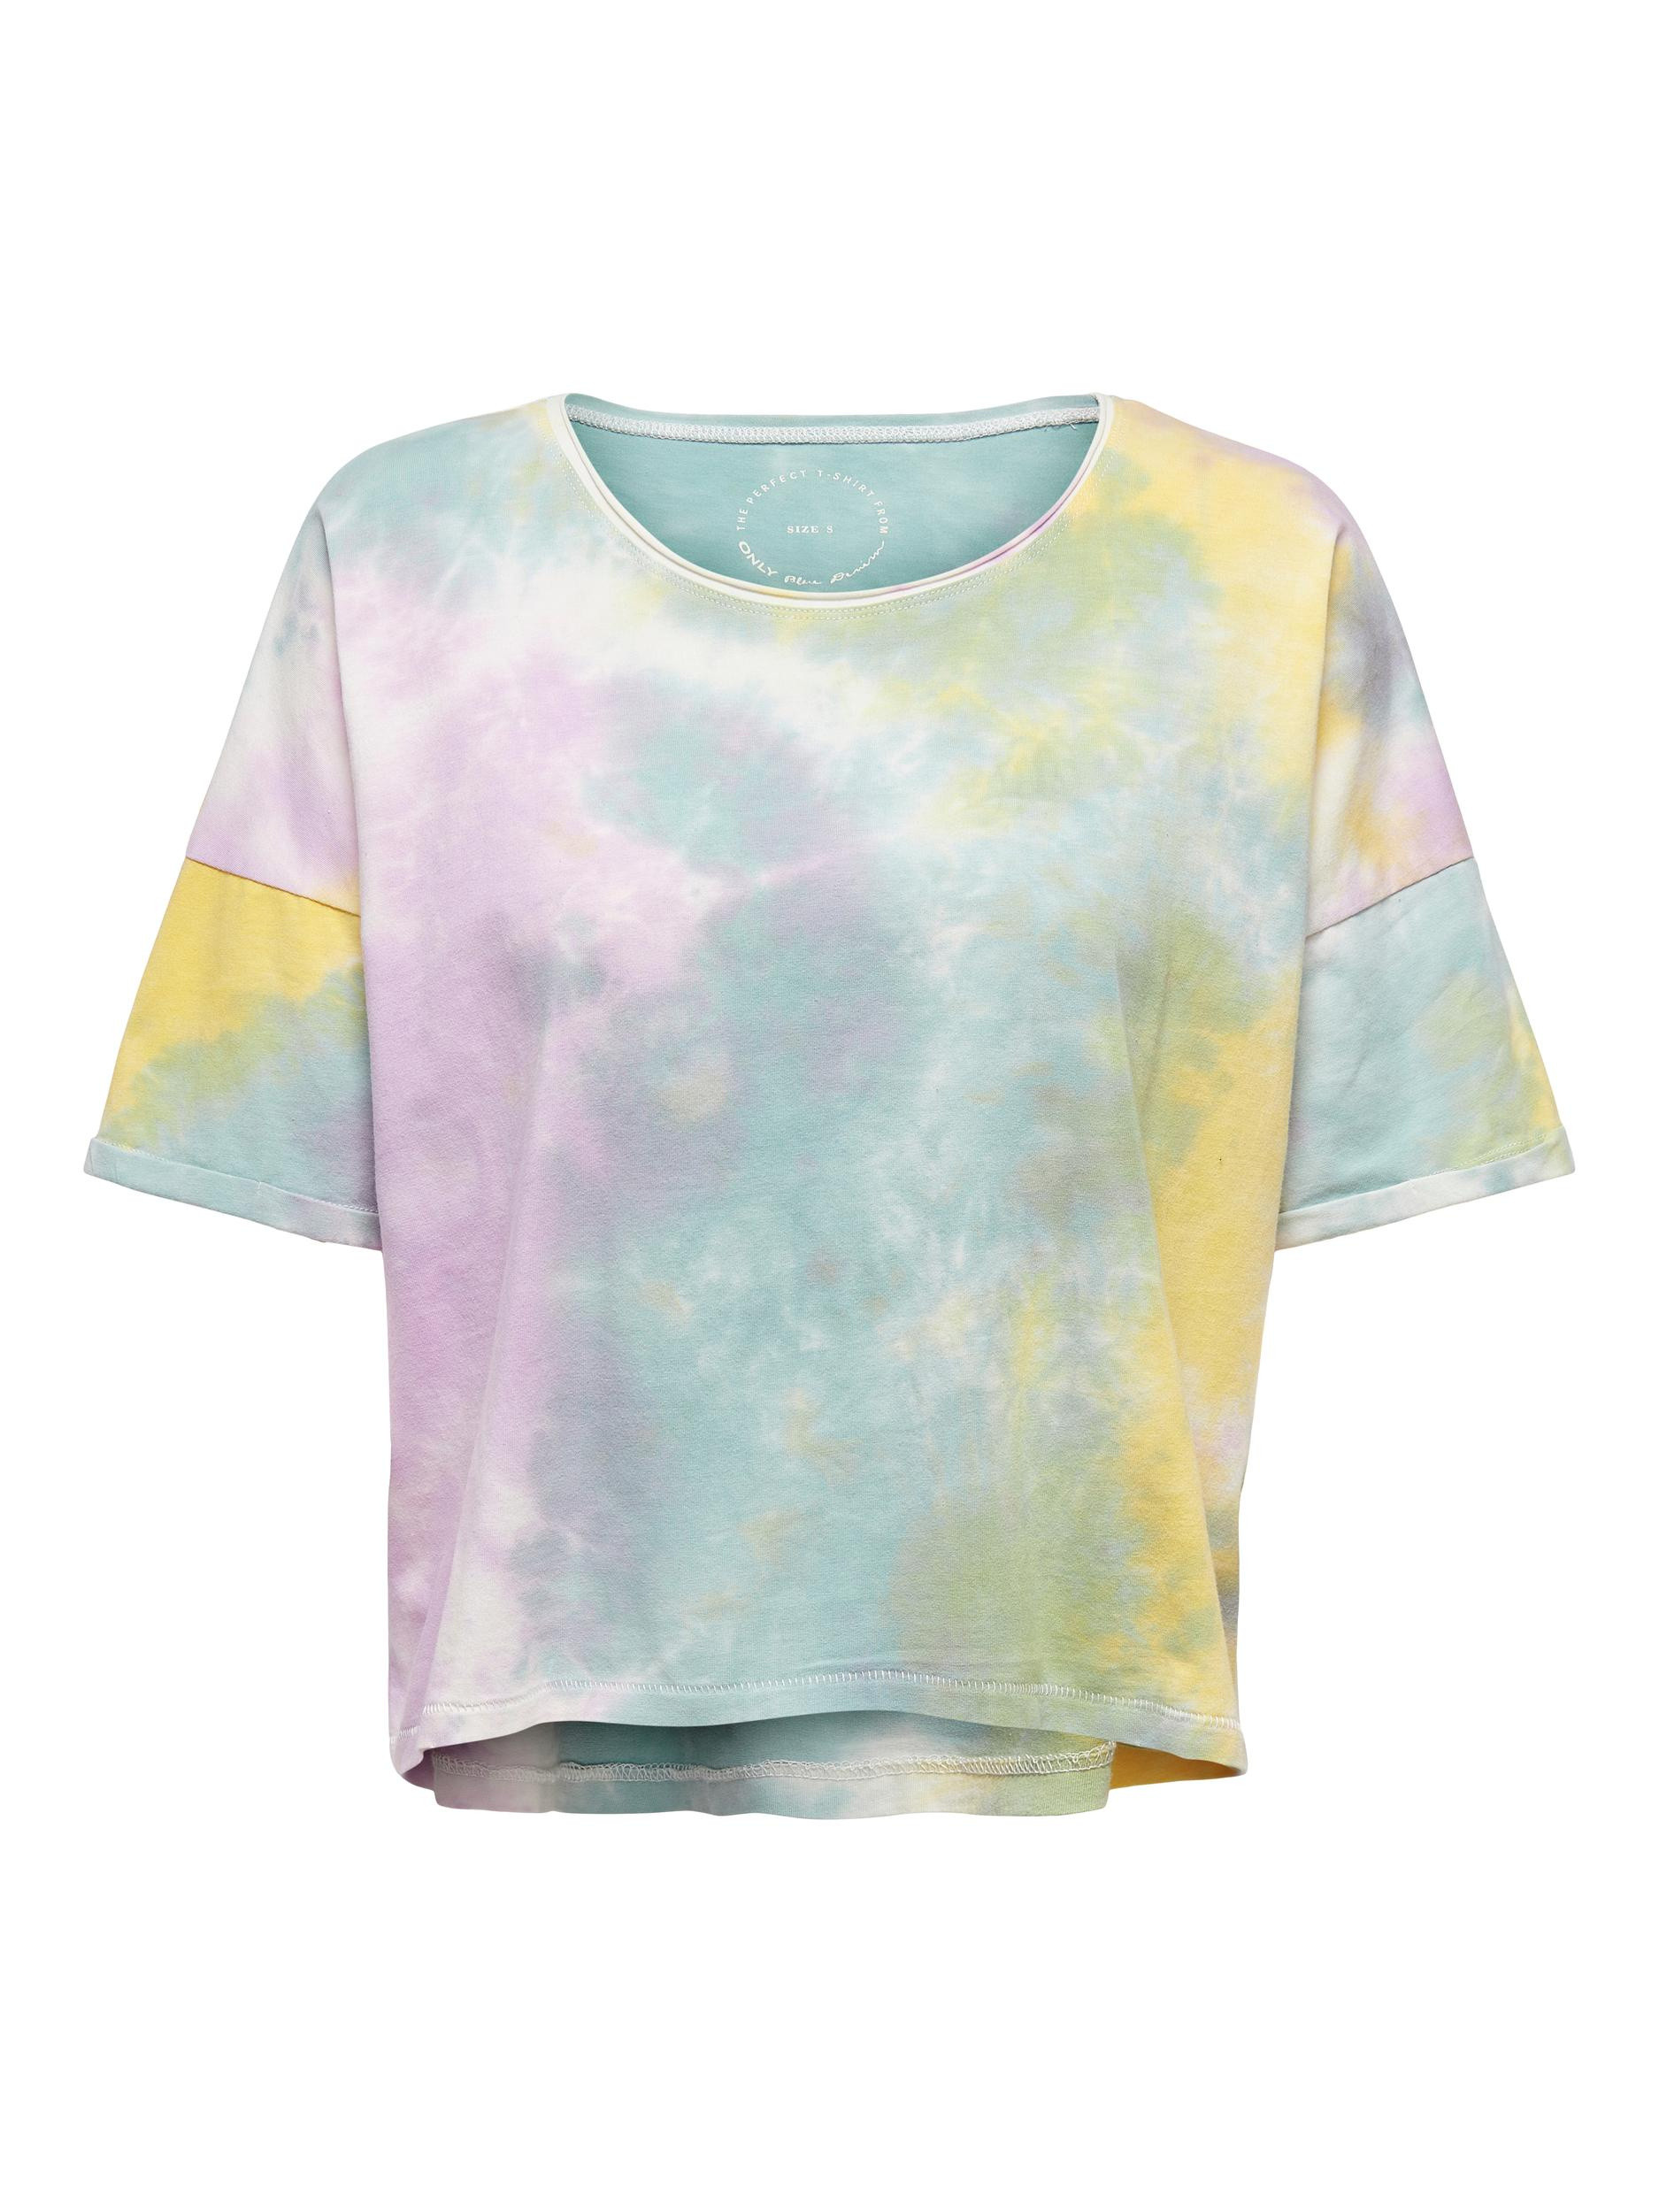 T-shirt con stampa effetto  acquerello, Multicolor, large